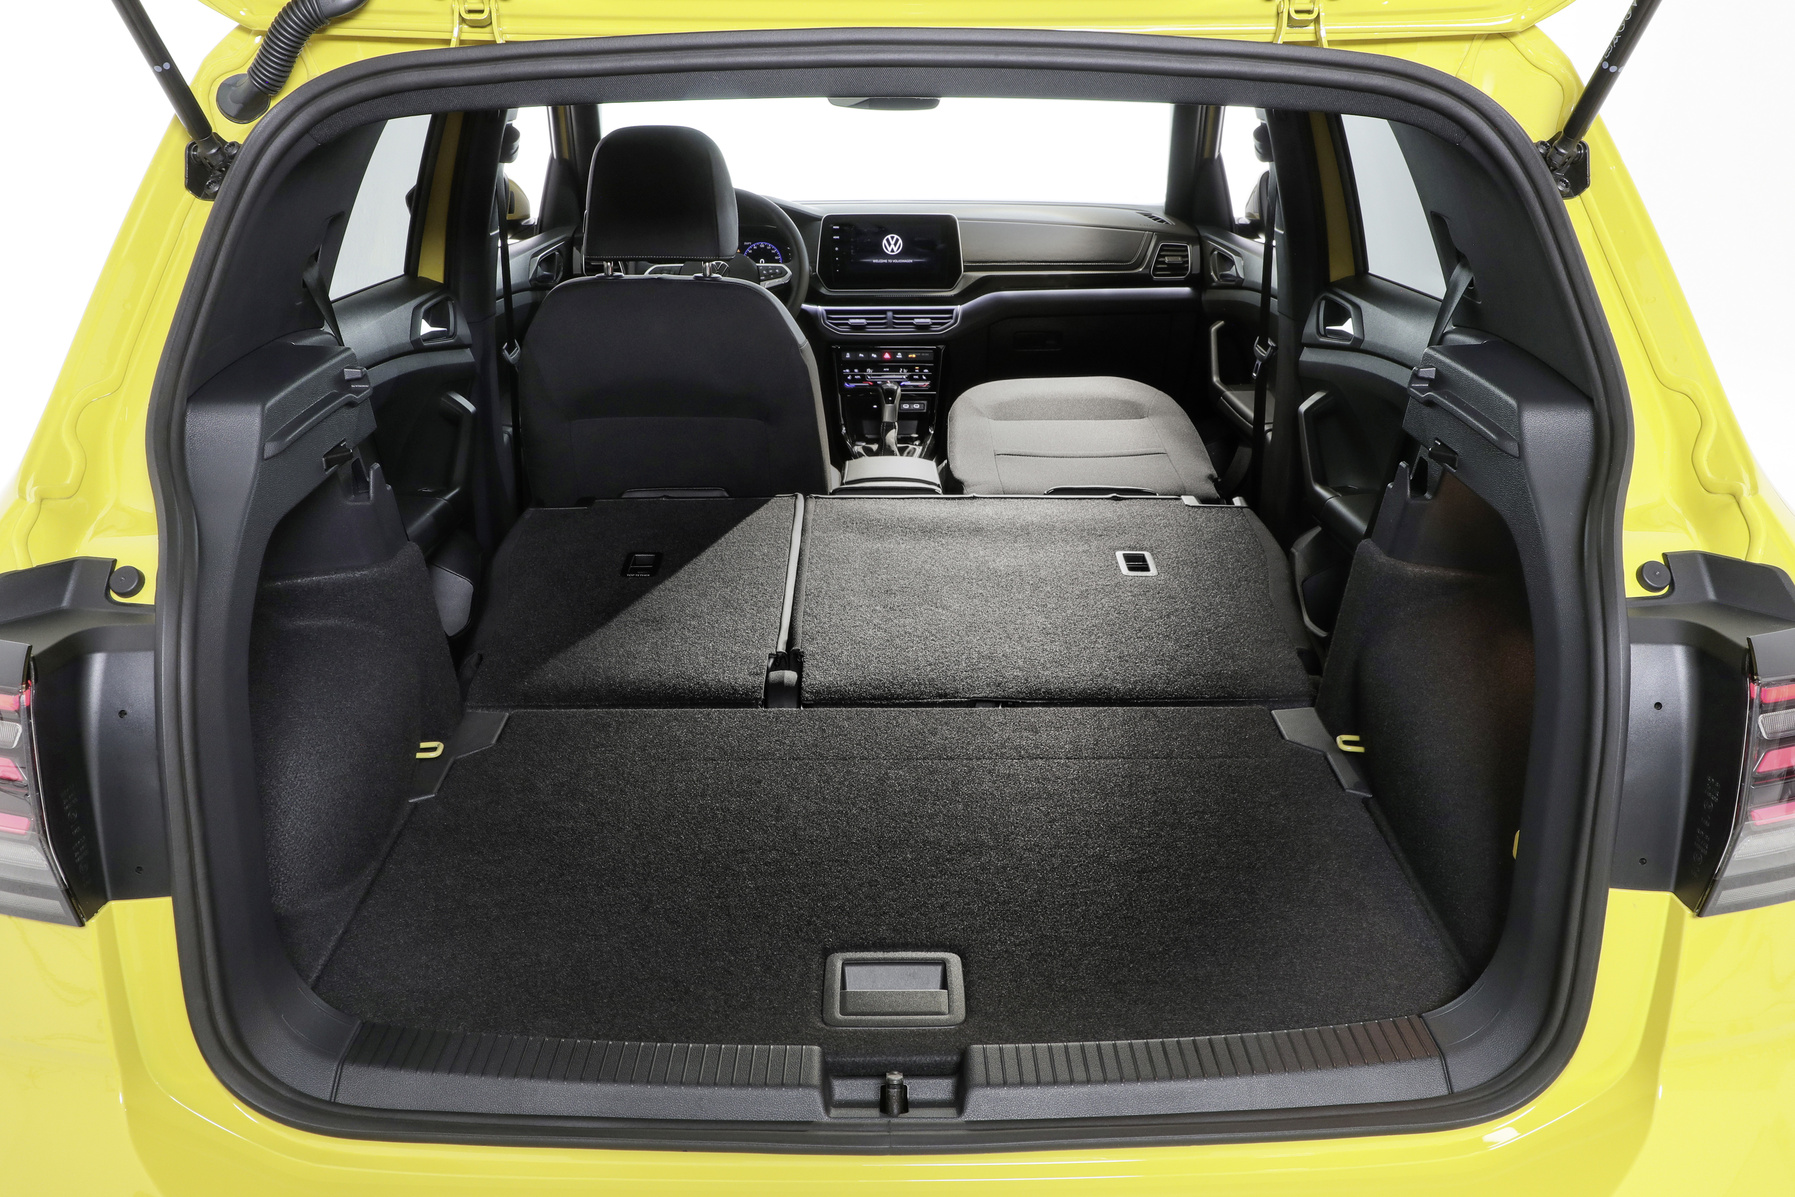 Nový Volkswagen T-cross přijede na začátku příštího roku. Sází na barevnost a rozšířenou výbavu